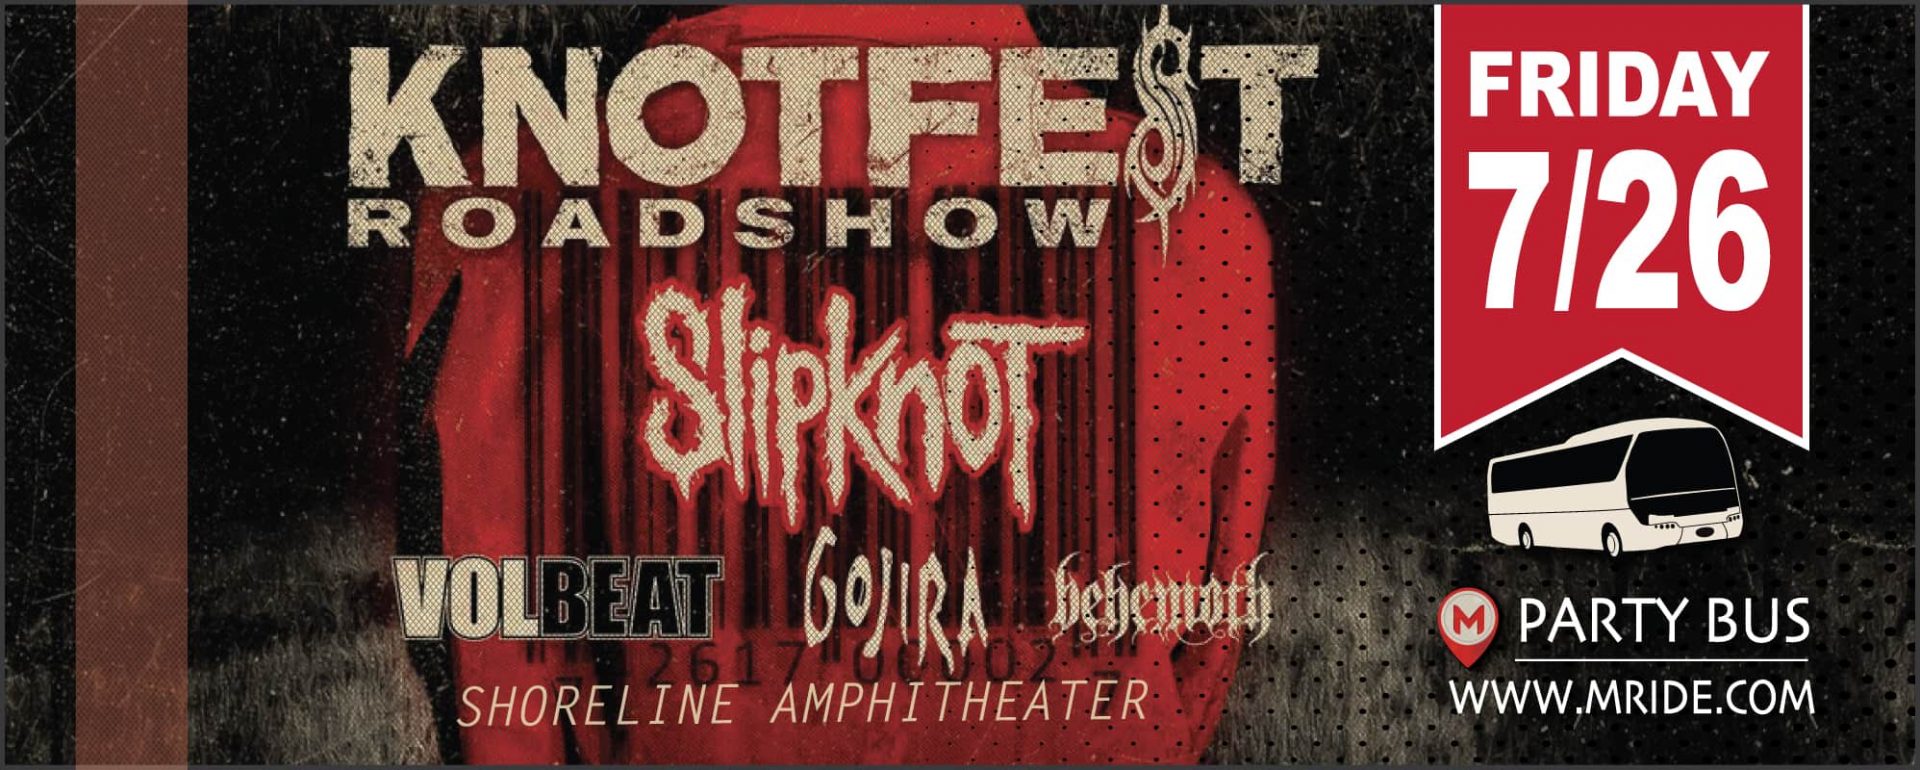 Slipknot Concert Shuttle